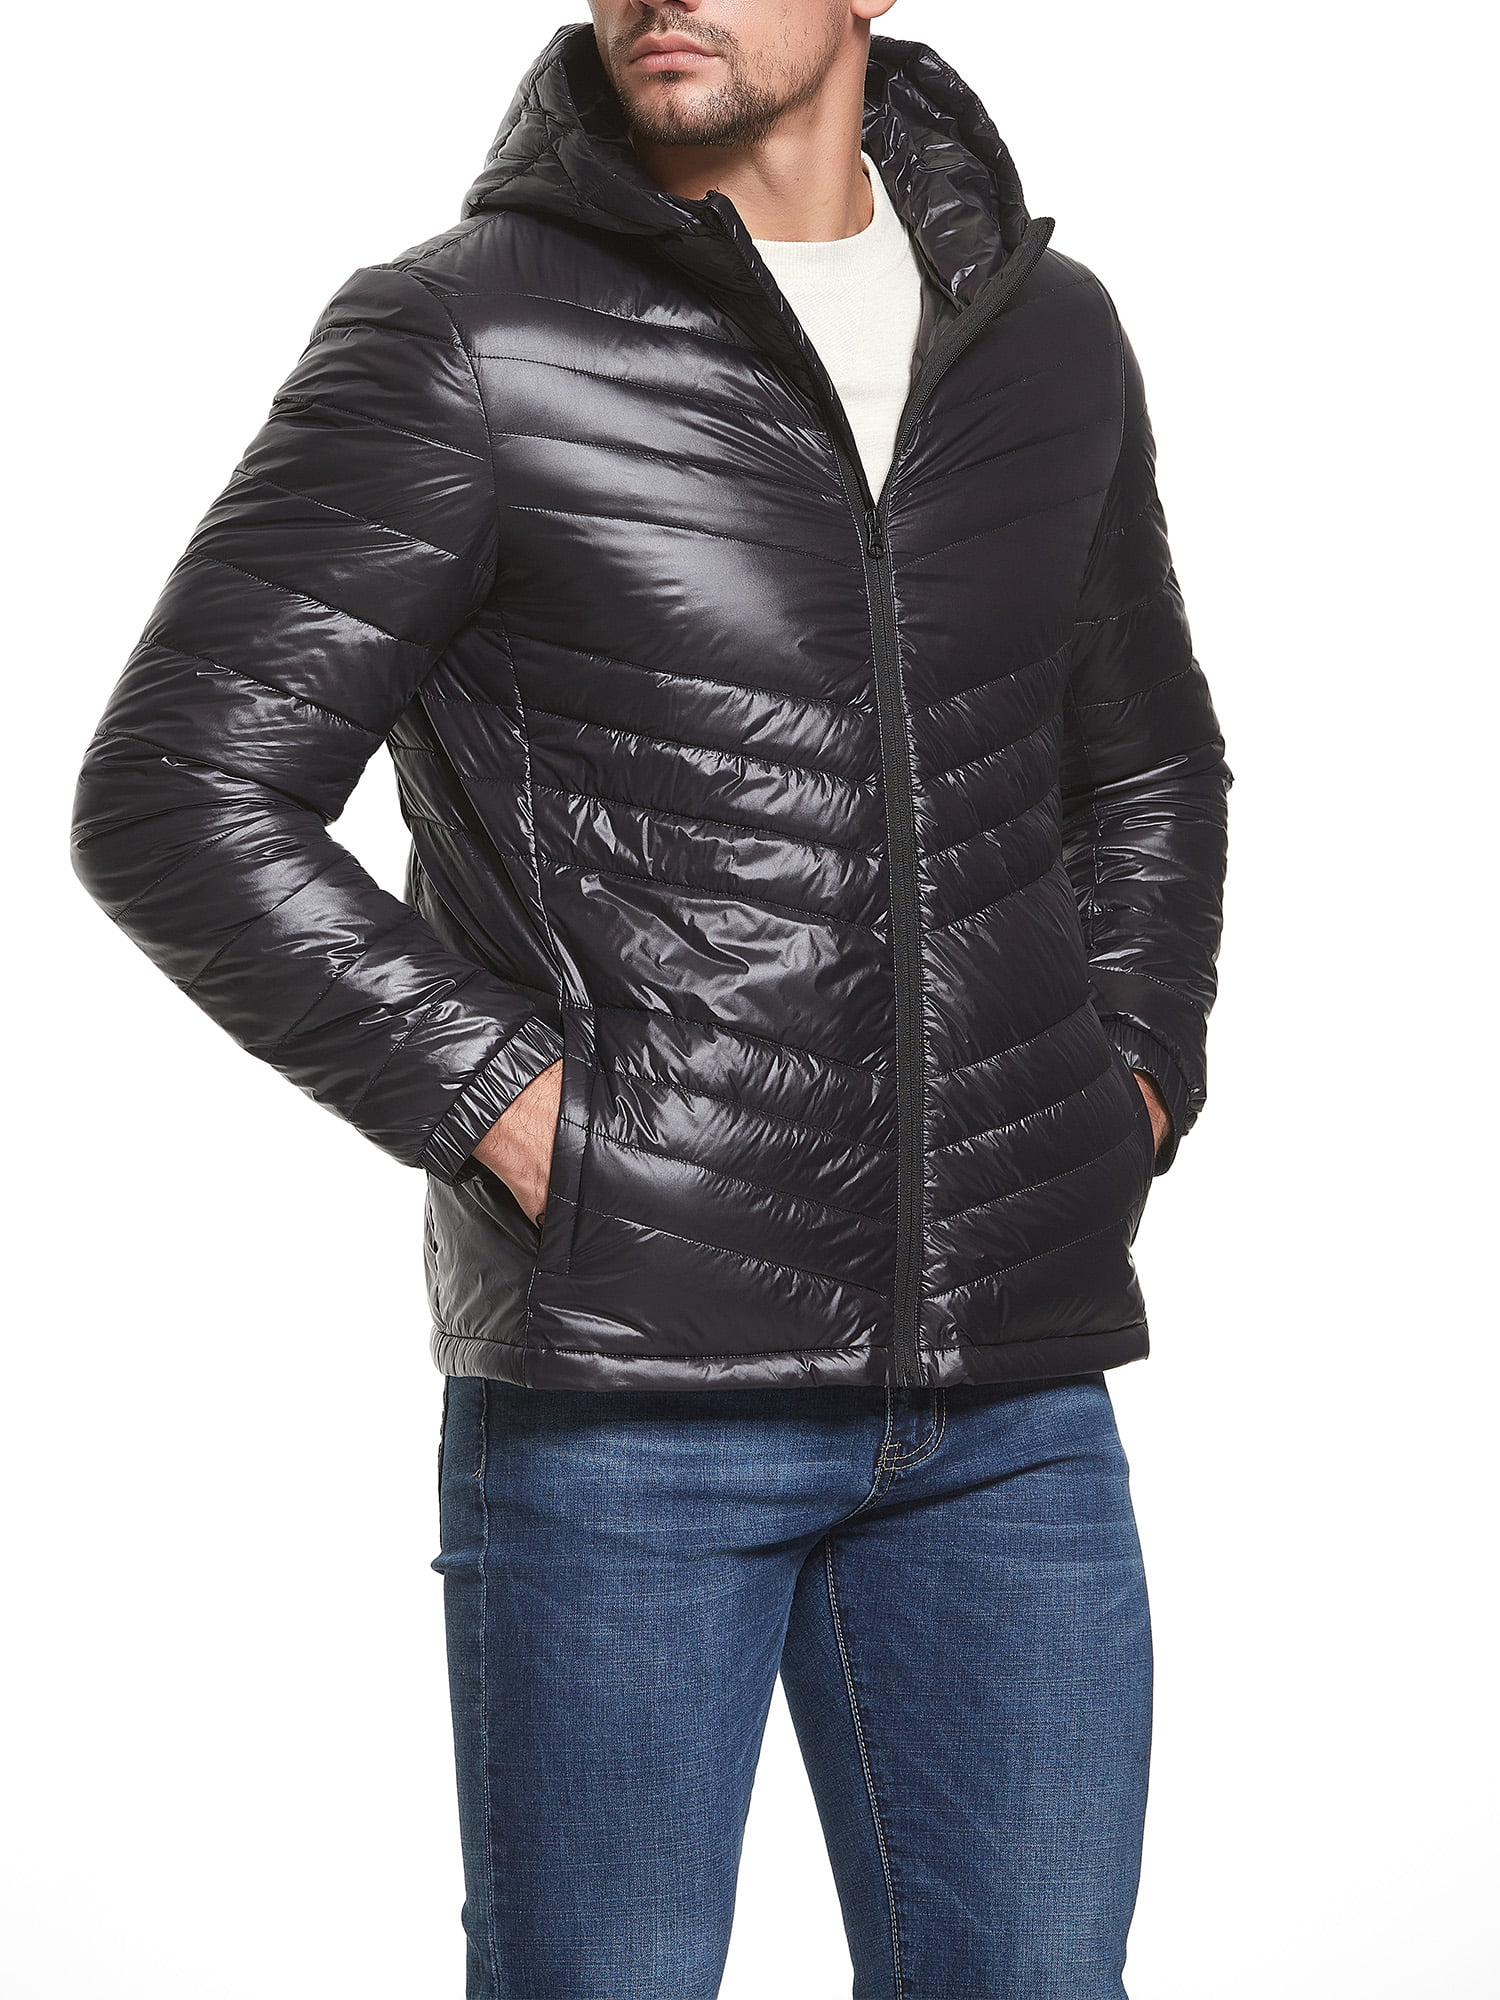 Conffetti Mens Light Weight Puffer Outer Autumn Winter Light Hoodies Packable Down Jacket